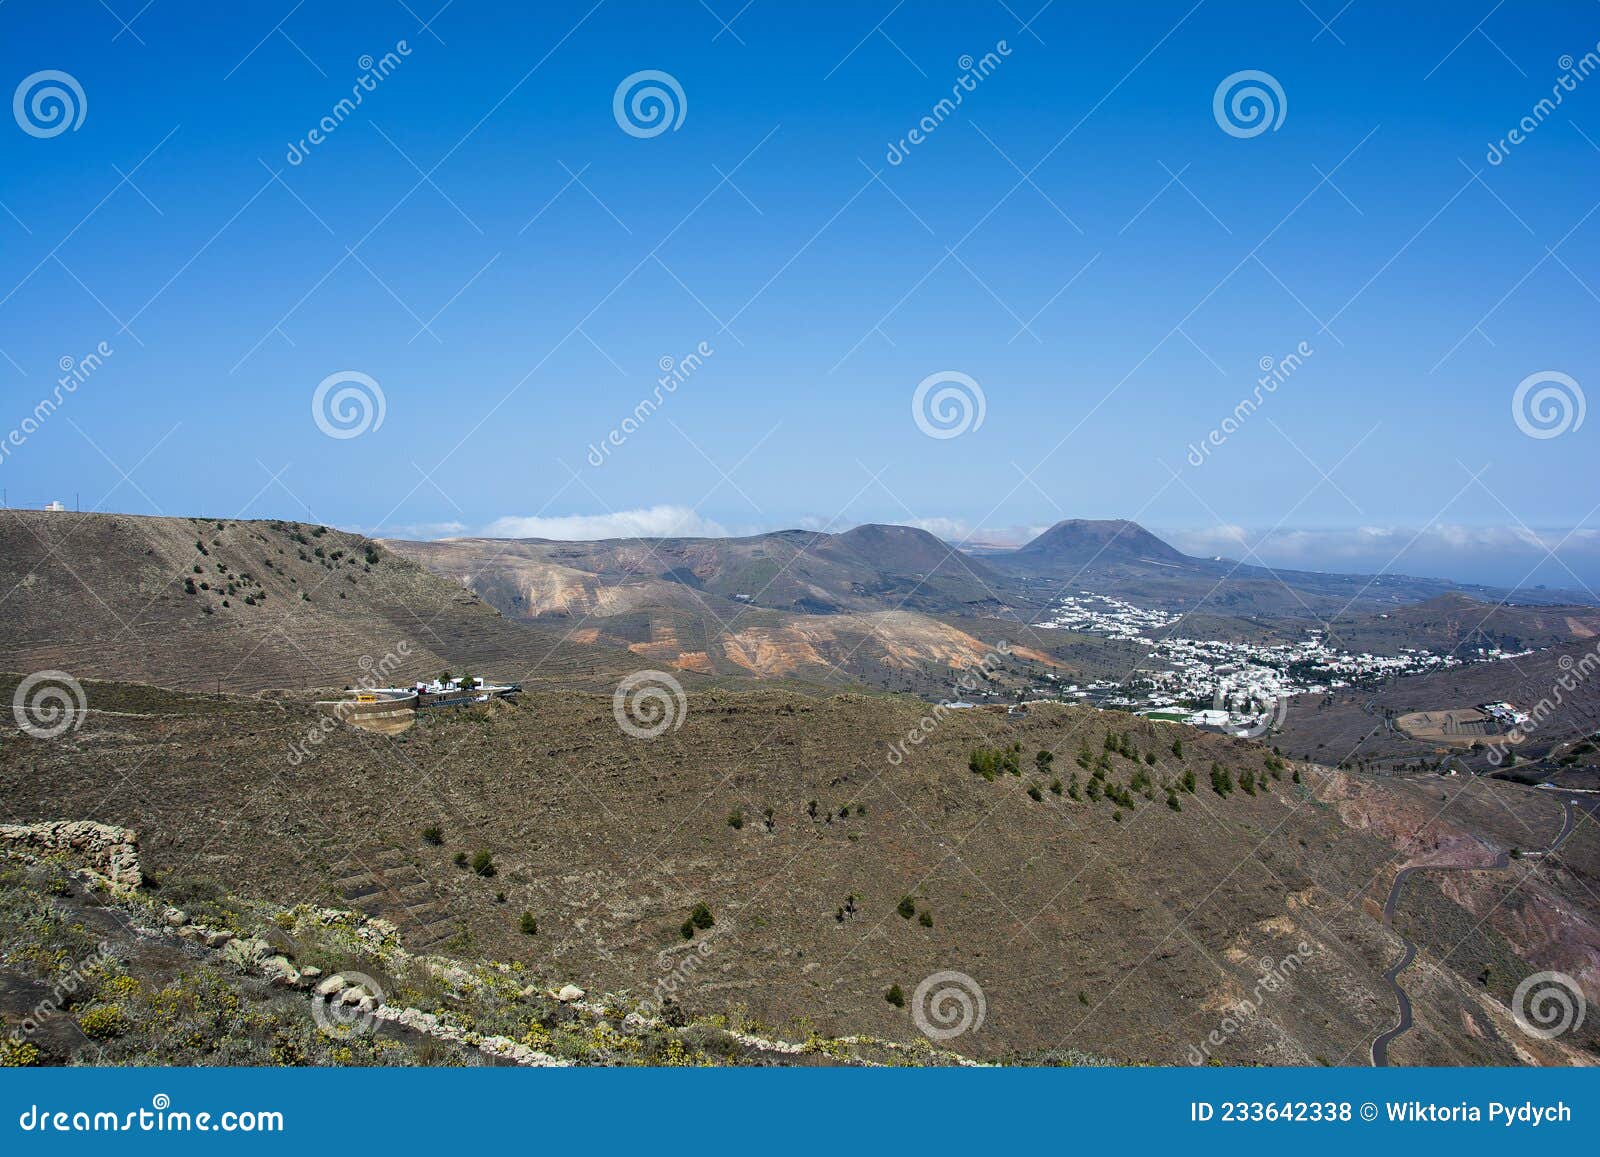 rare lanzarote landscape - monte corona